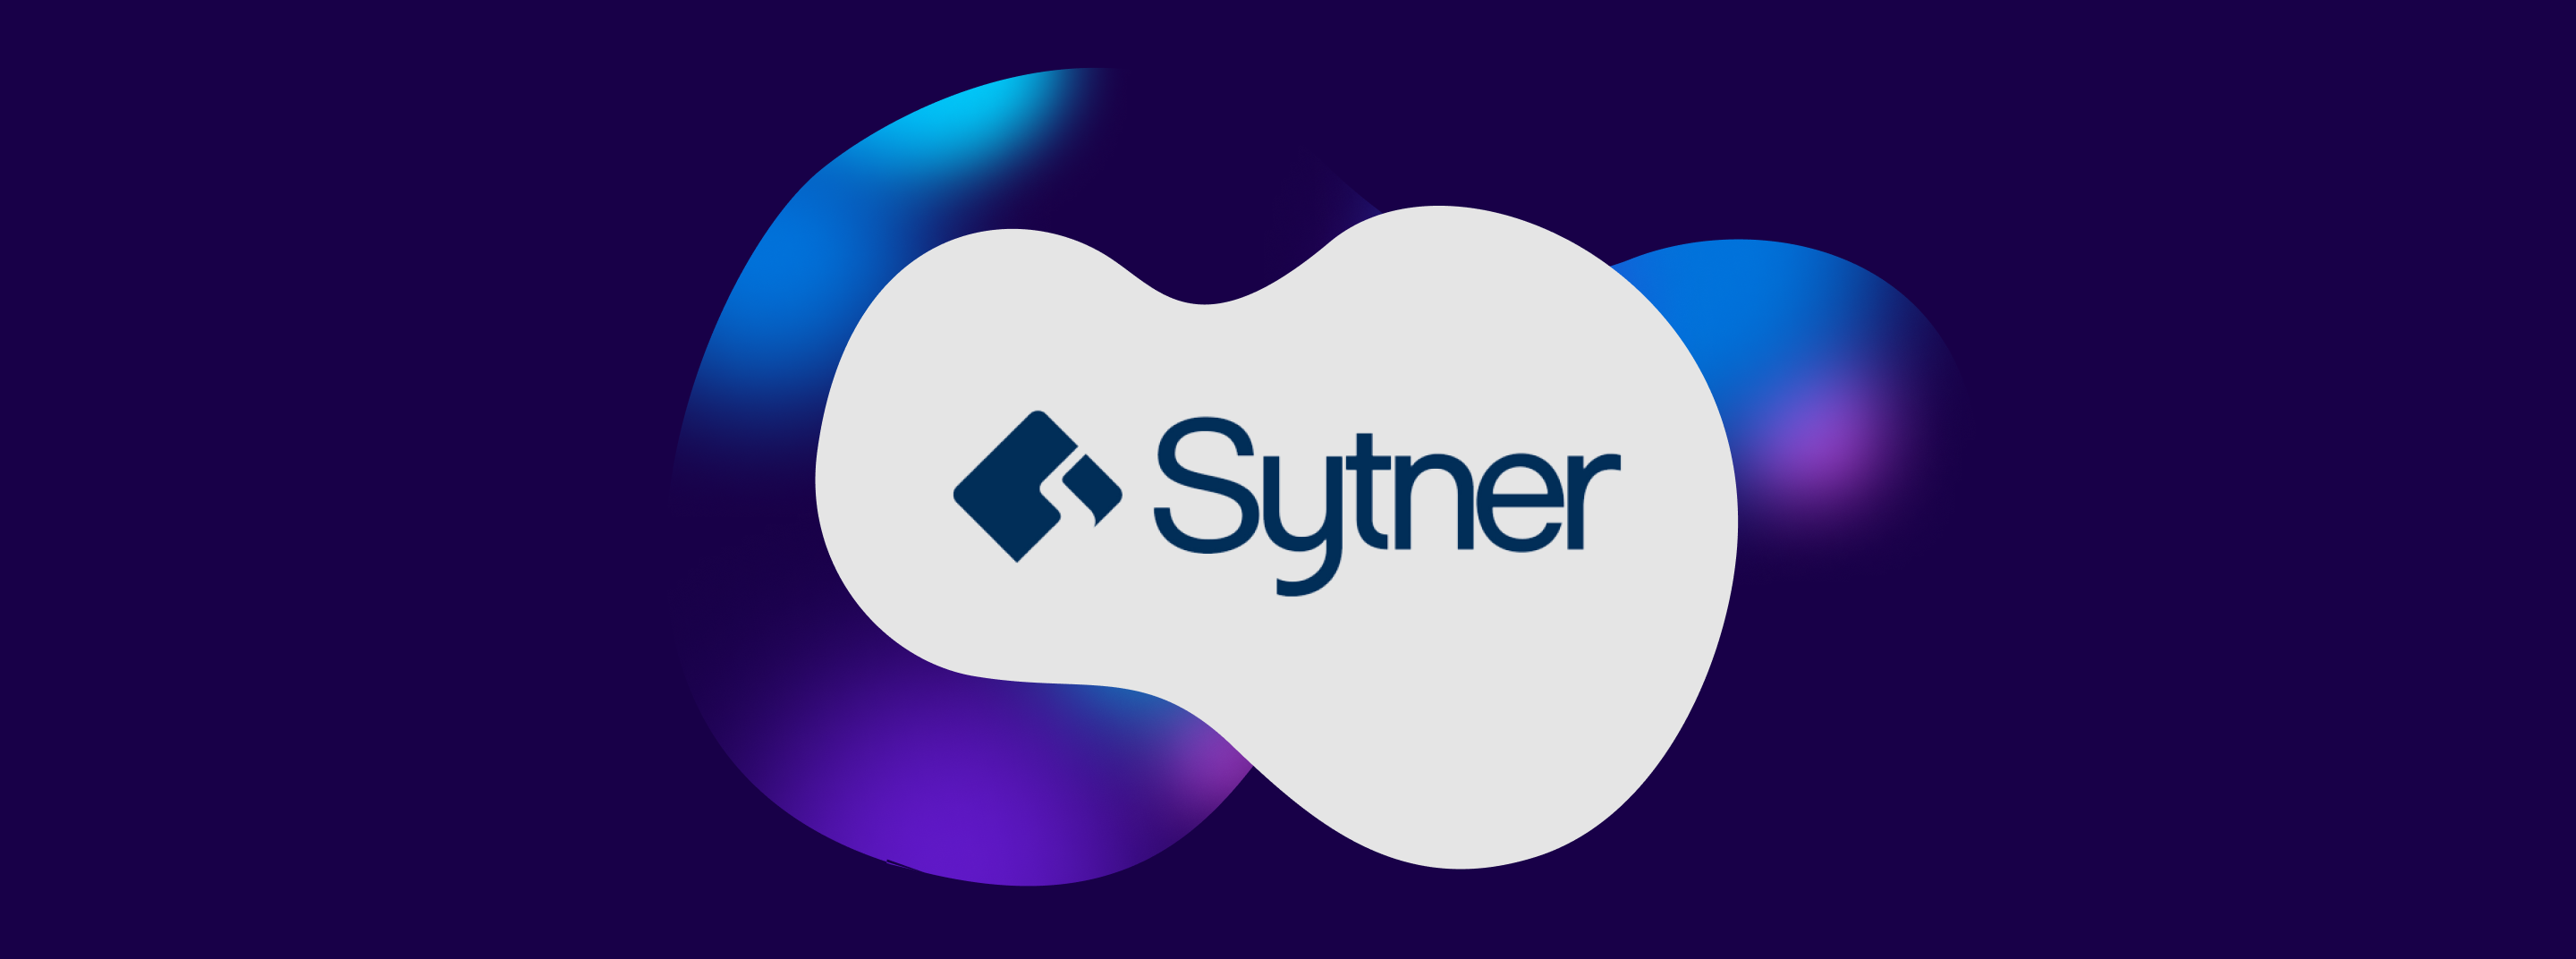 Sytner logo header 